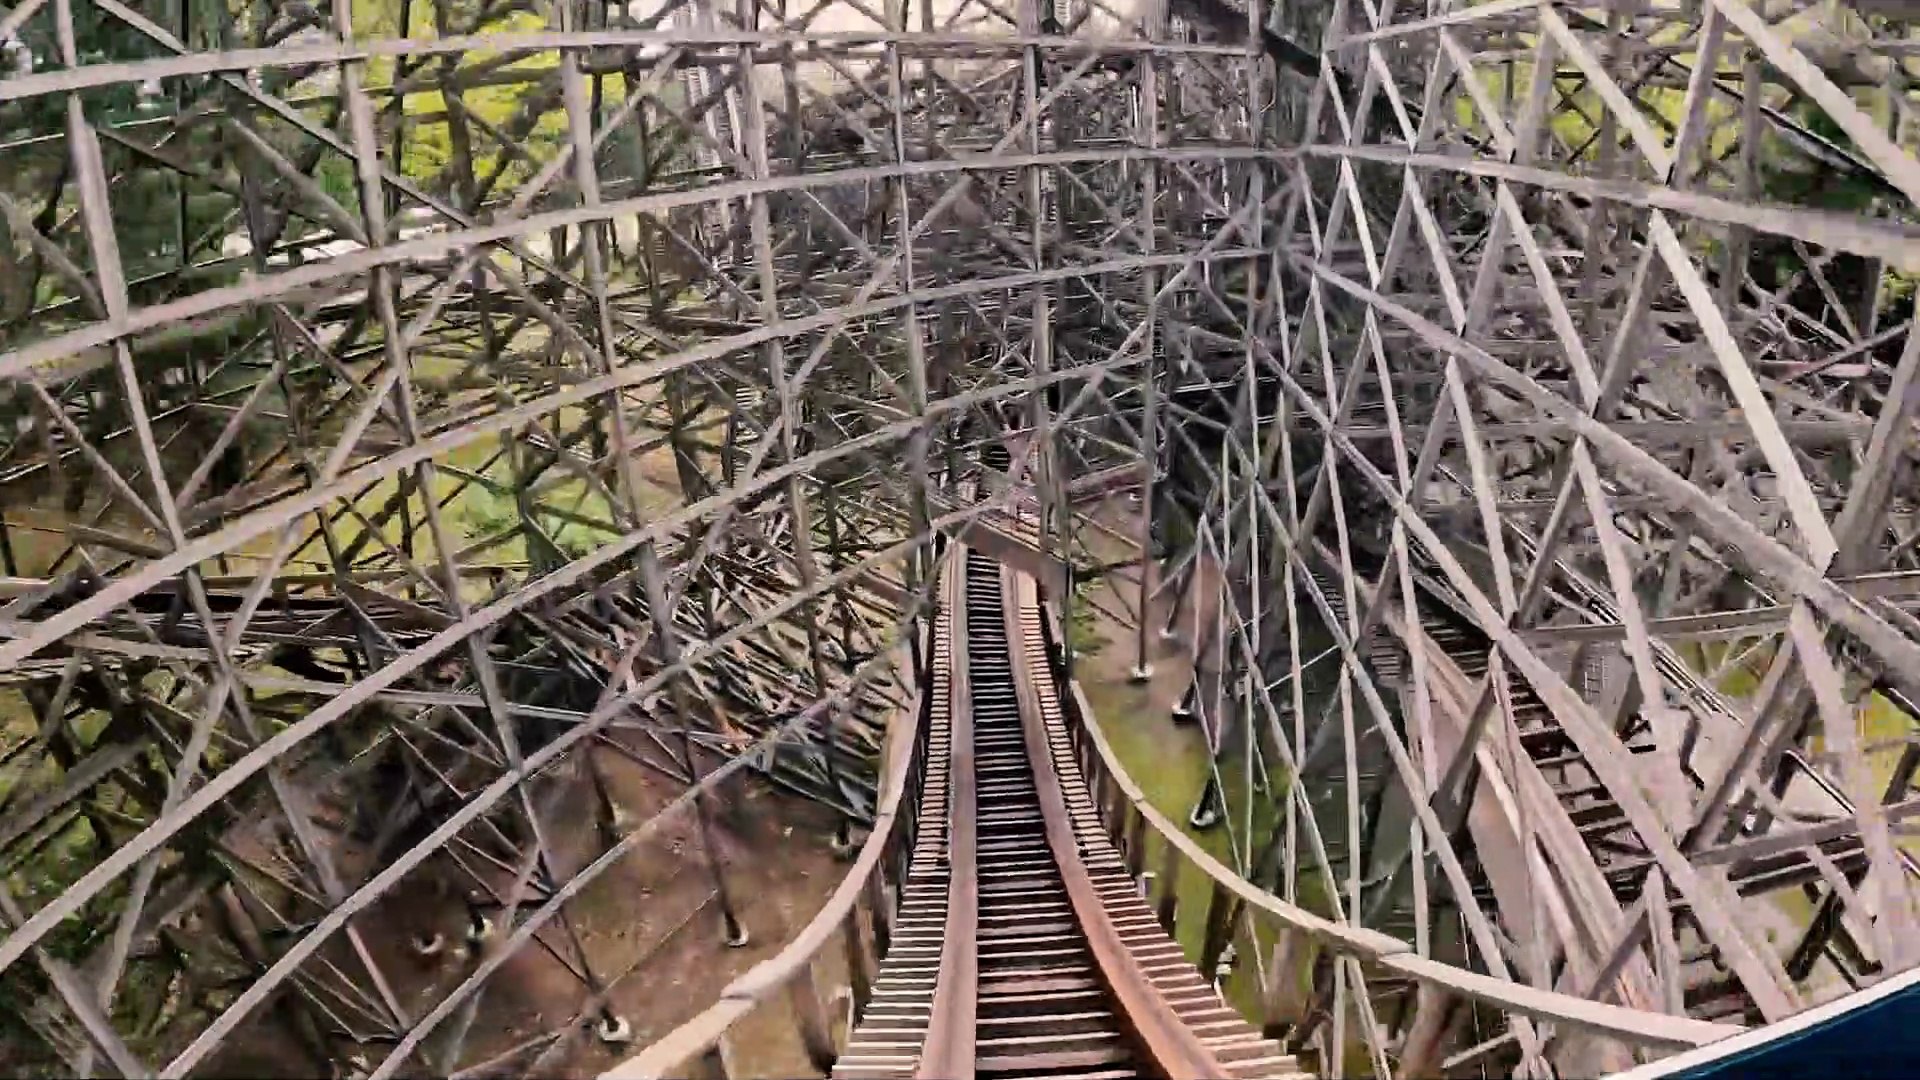 Virginia Roller Coasters - Steel, Wooden